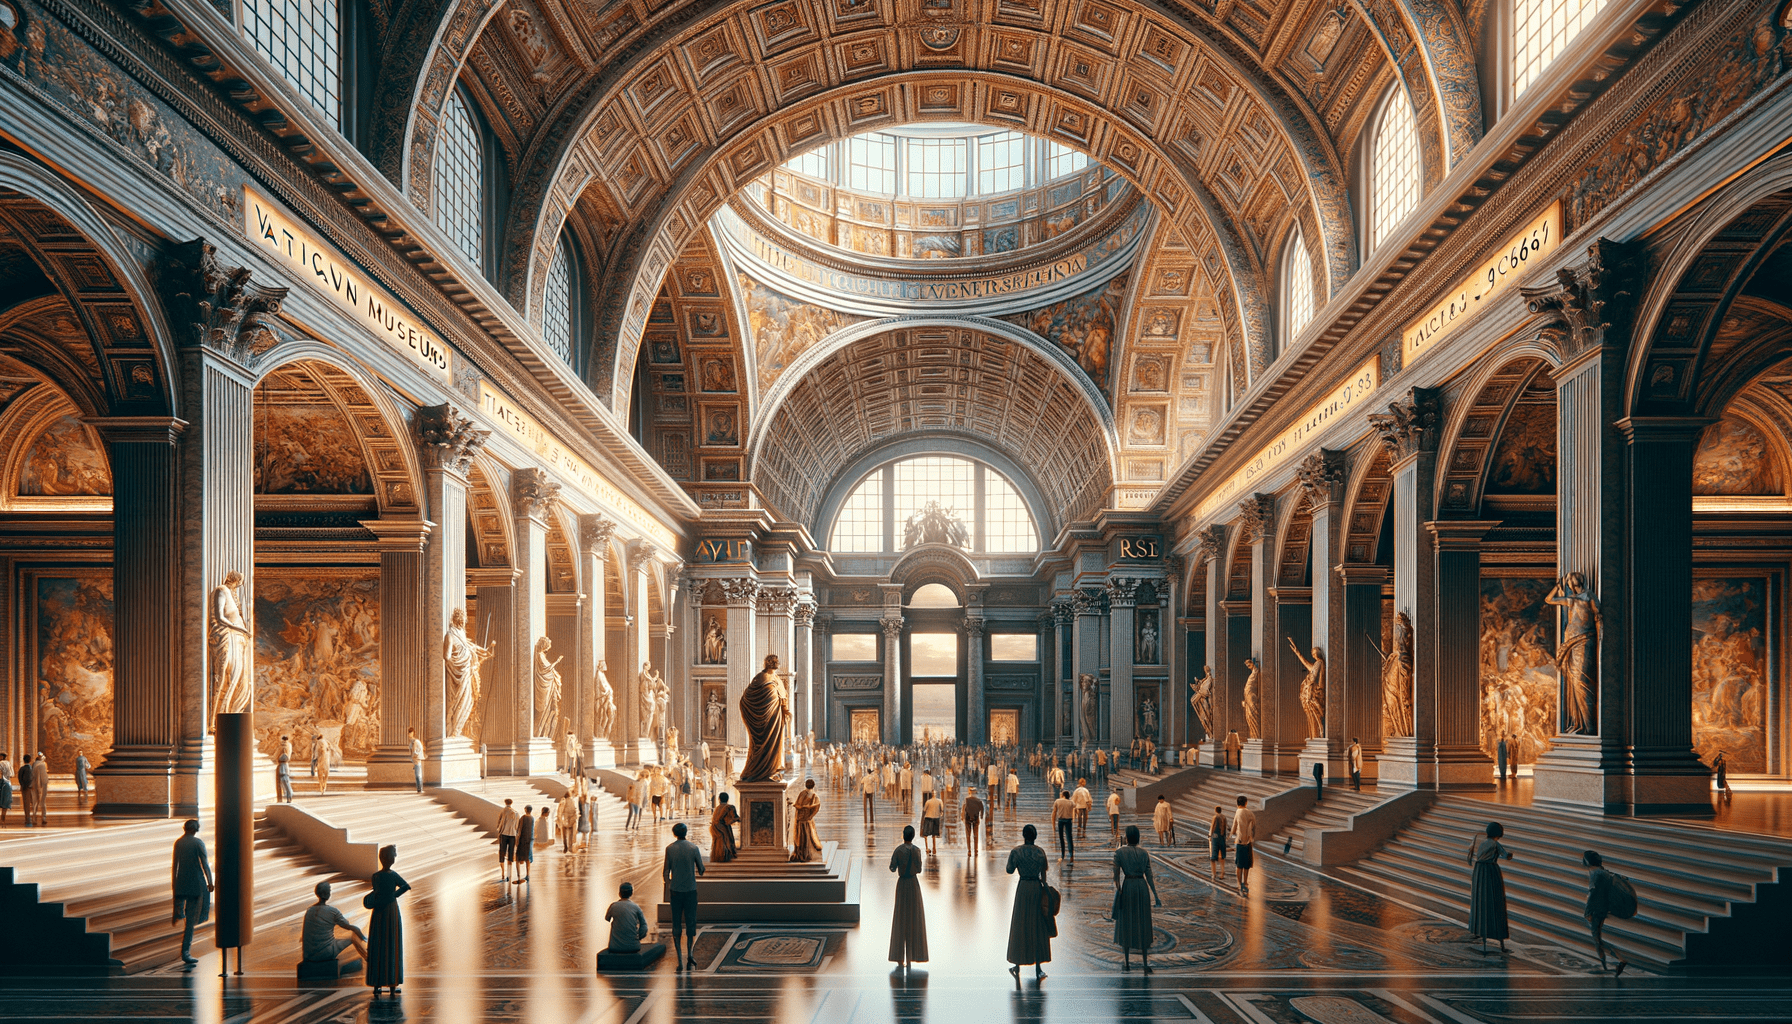 Scopri tutto sui Musei Vaticani: Storia, Opere, Biglietti, indirizzo e orari